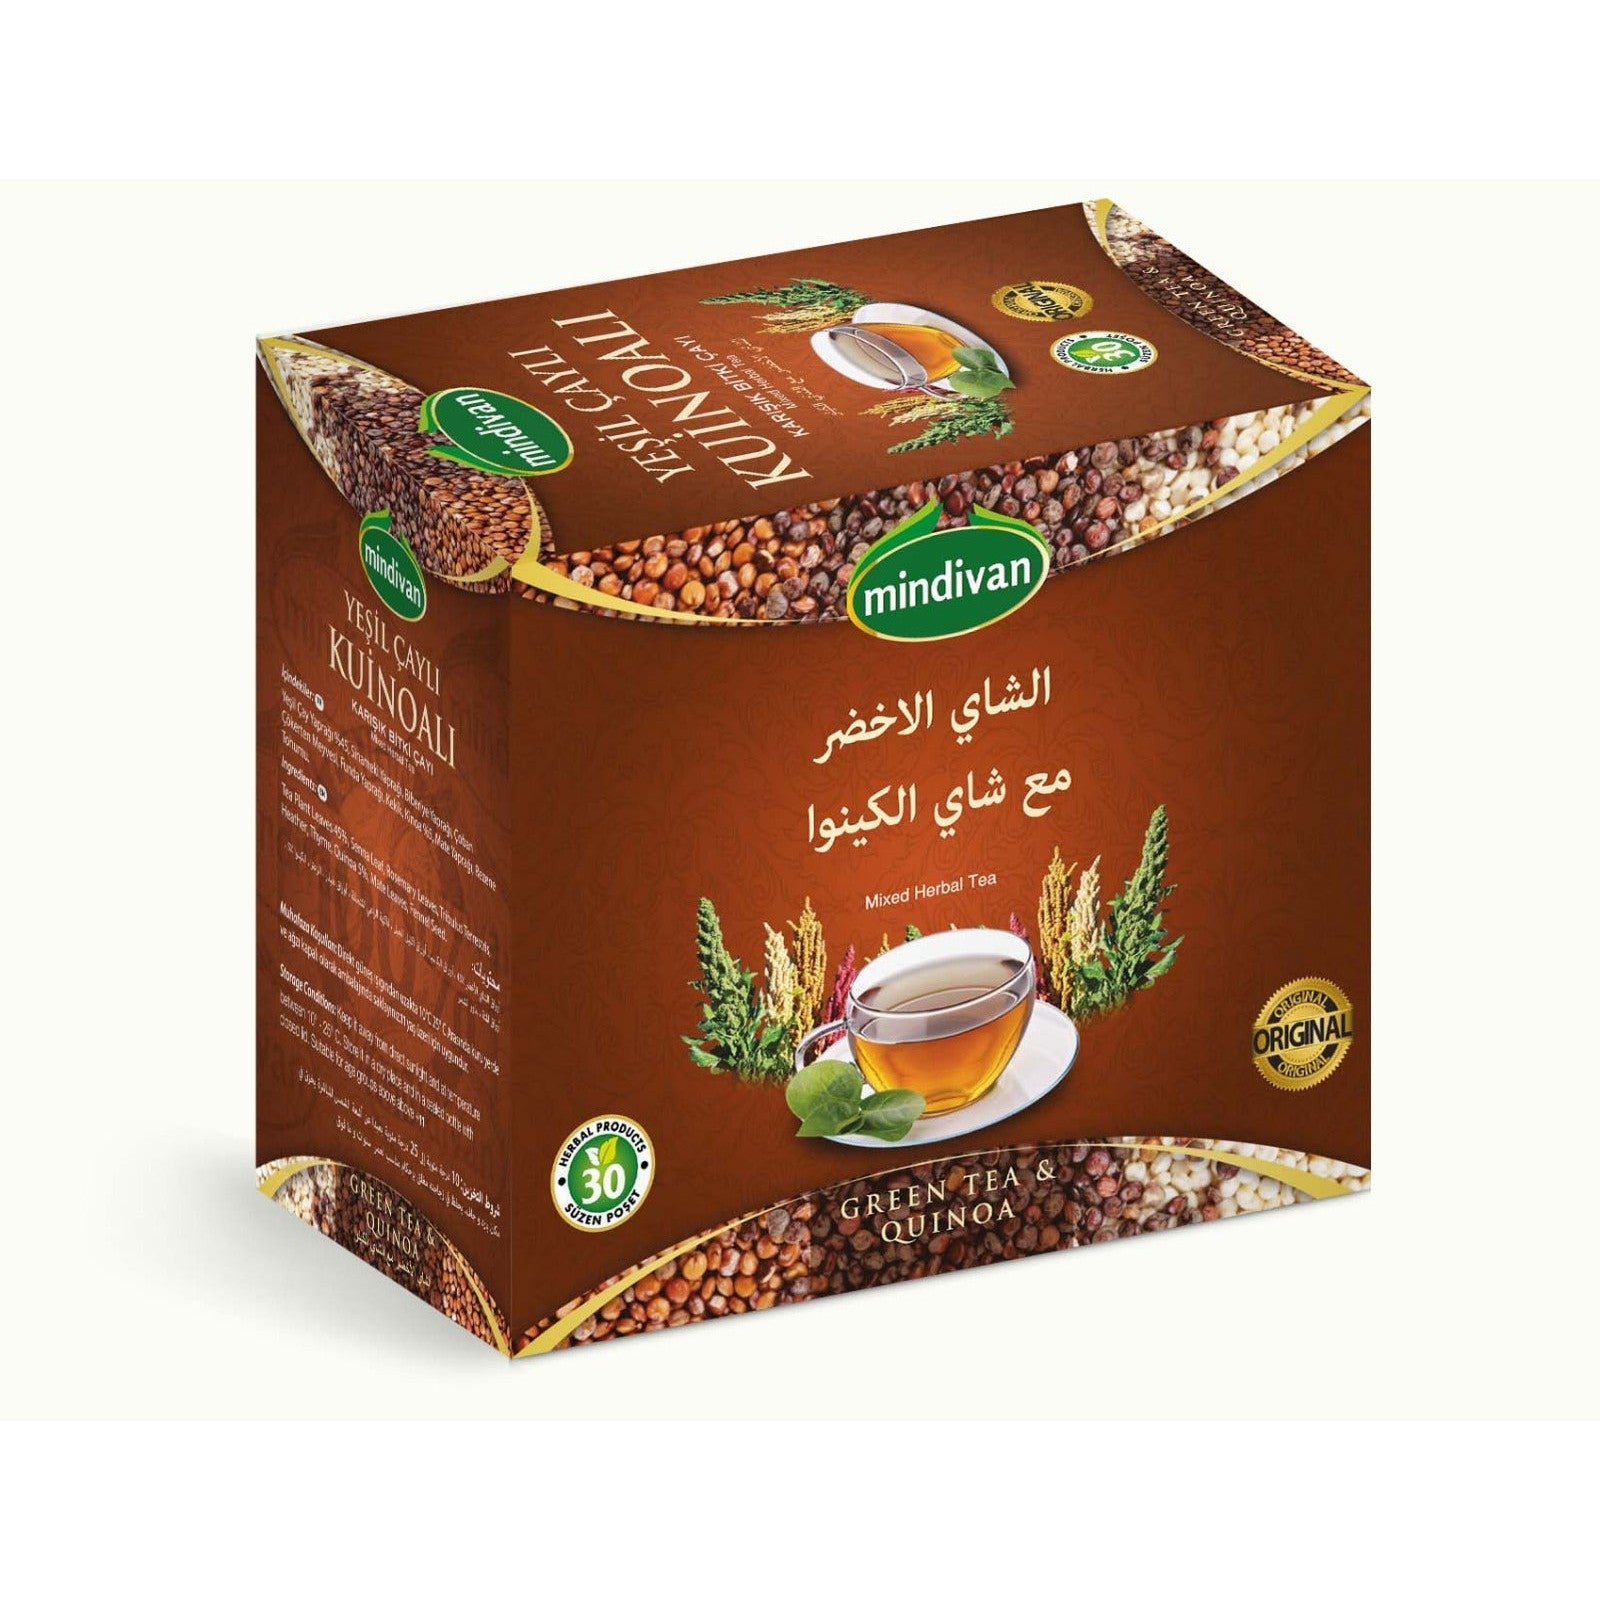 Mindivan Green Tea & Quinoa 30 bags